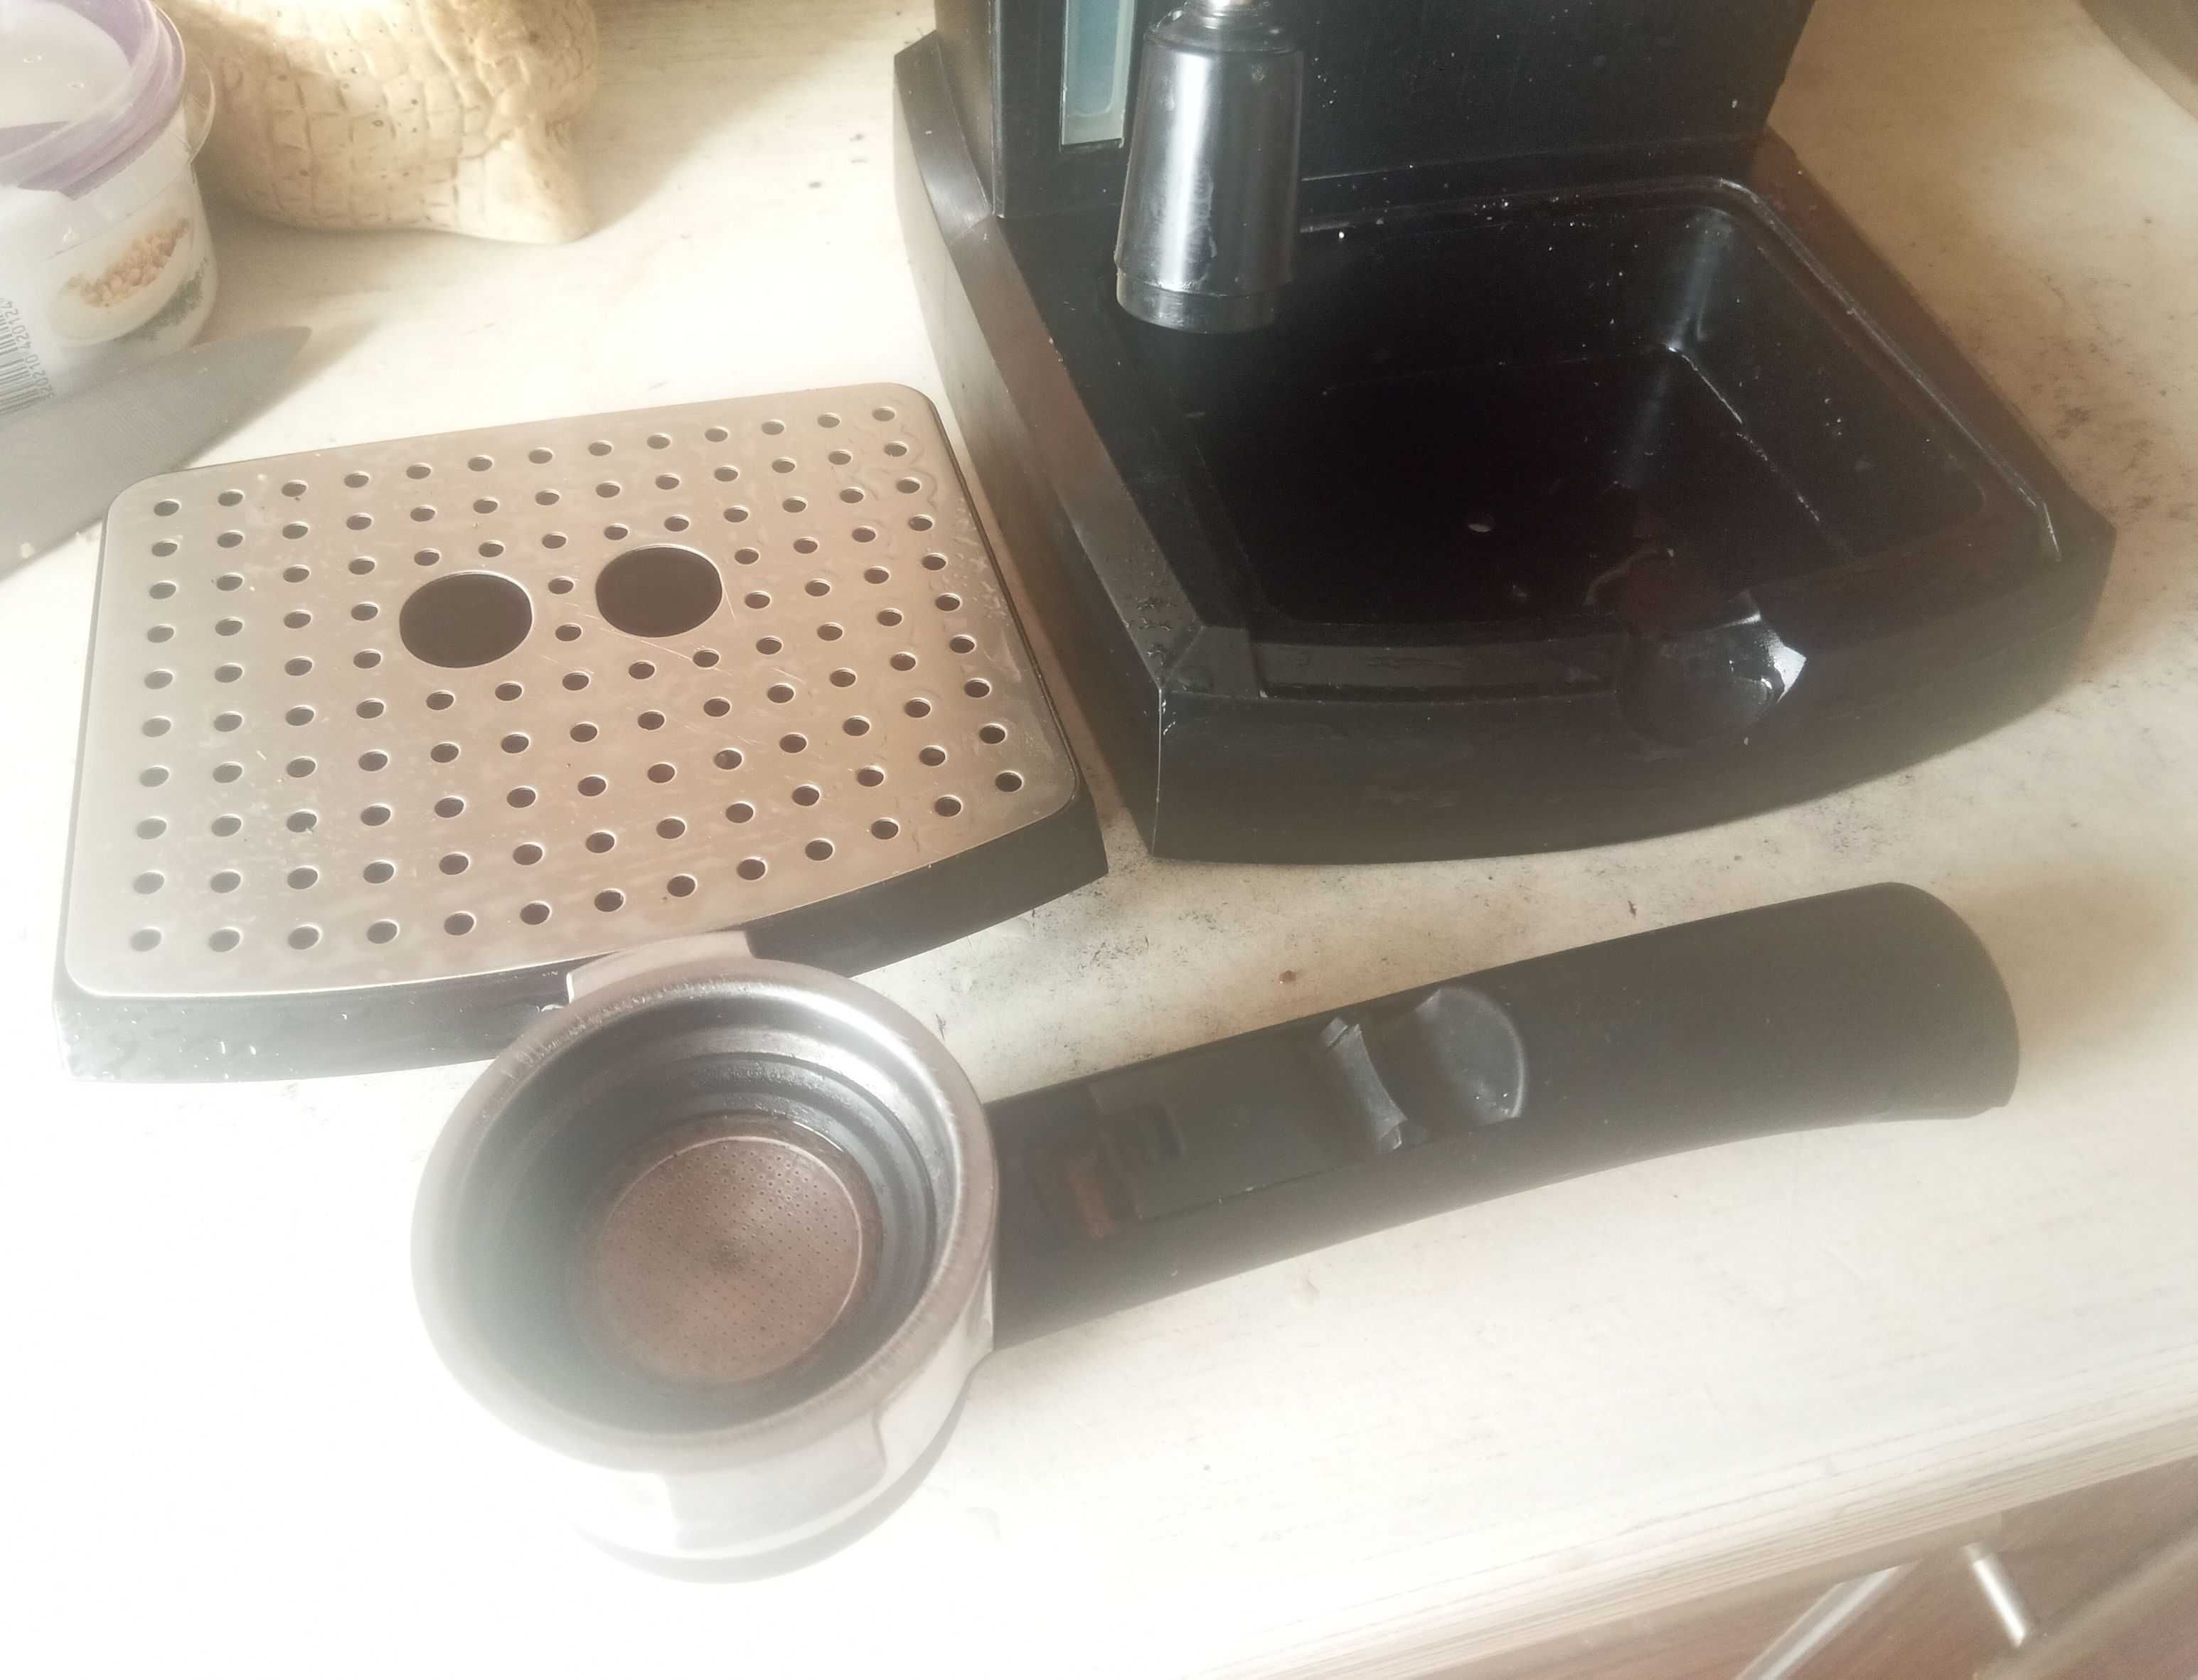 Кофеварка DeLonghi EC155 рожковая электрическая эспрессо капучино